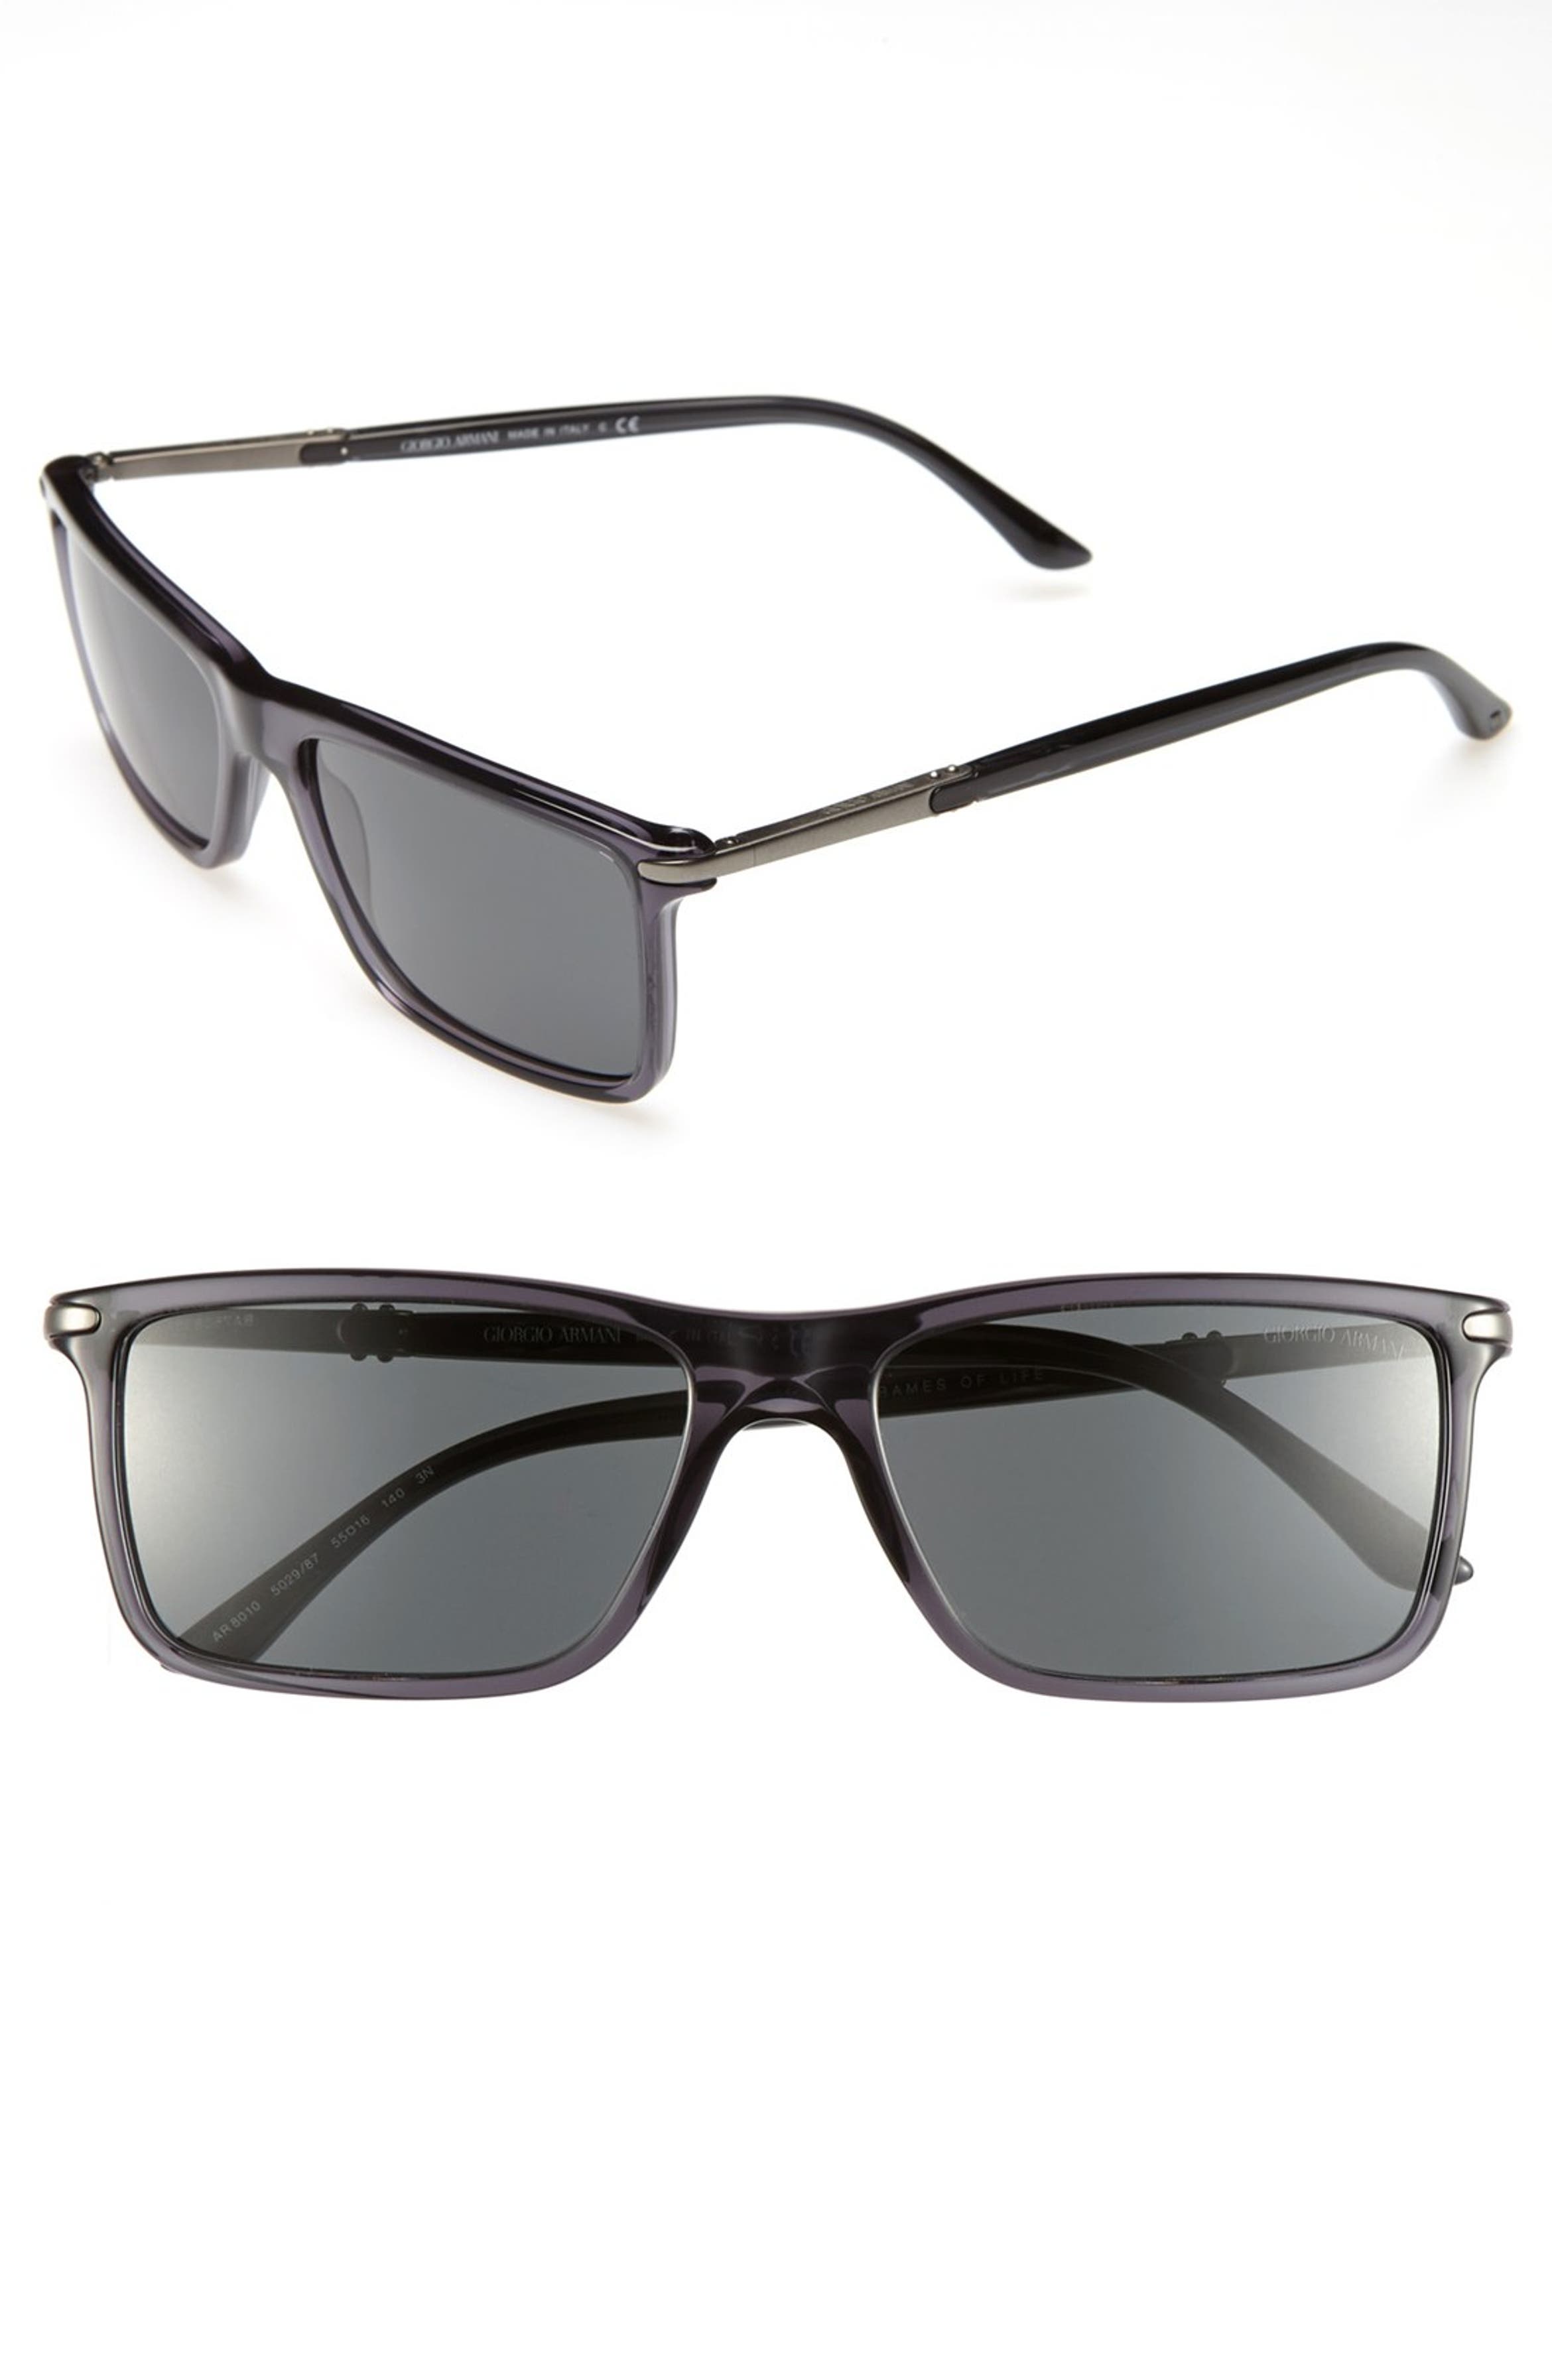 Giorgio Armani 55mm Sunglasses Nordstrom